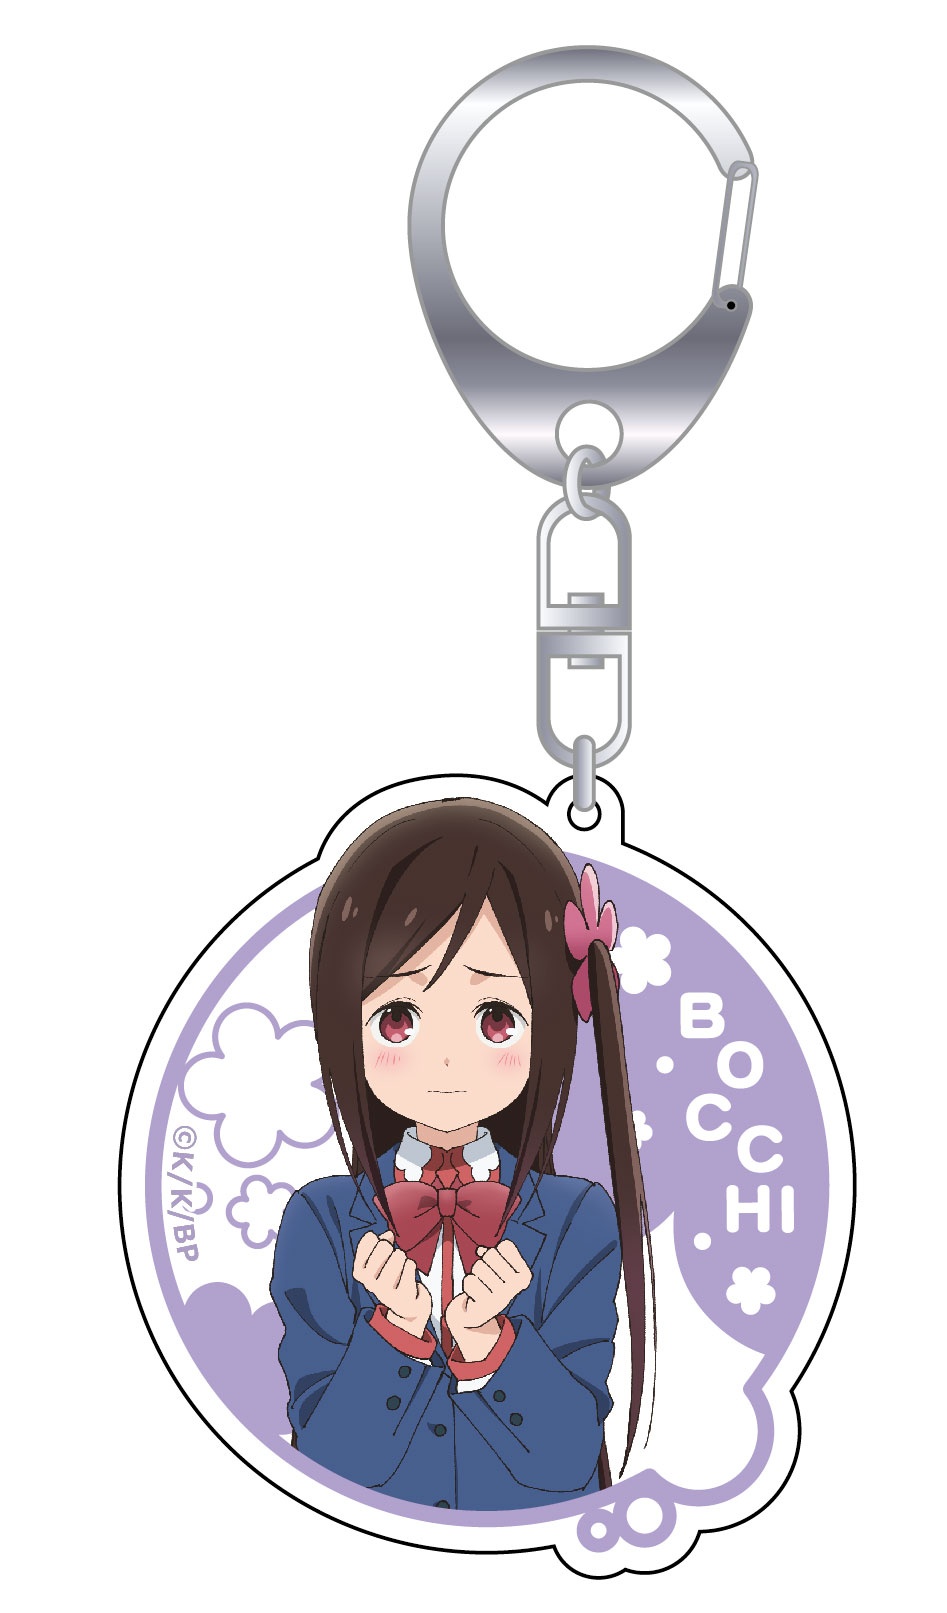 Hitori Bocchi no Marumaru Seikatsu Puni Colle! Key Ring (w/Stand) Aru  Honsho (Anime Toy) - HobbySearch Anime Goods Store